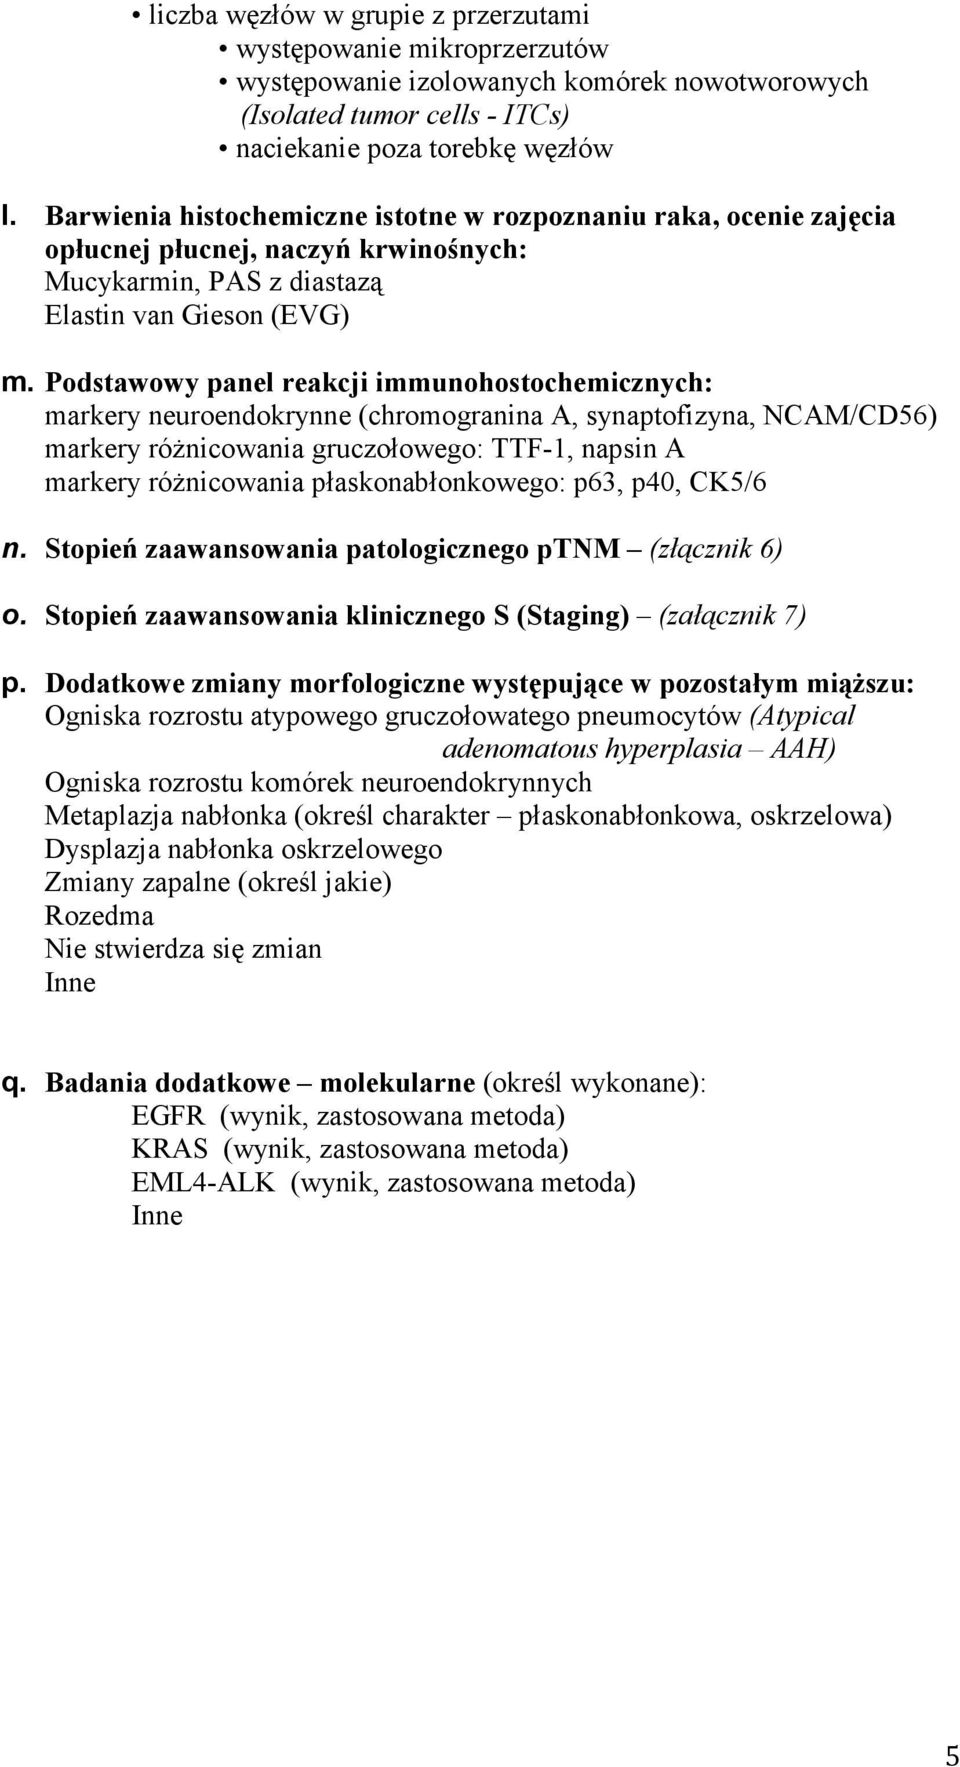 Podstawowy panel reakcji immunohostochemicznych: markery neuroendokrynne (chromogranina A, synaptofizyna, NCAM/CD56) markery róŝnicowania gruczołowego: TTF-1, napsin A markery róŝnicowania